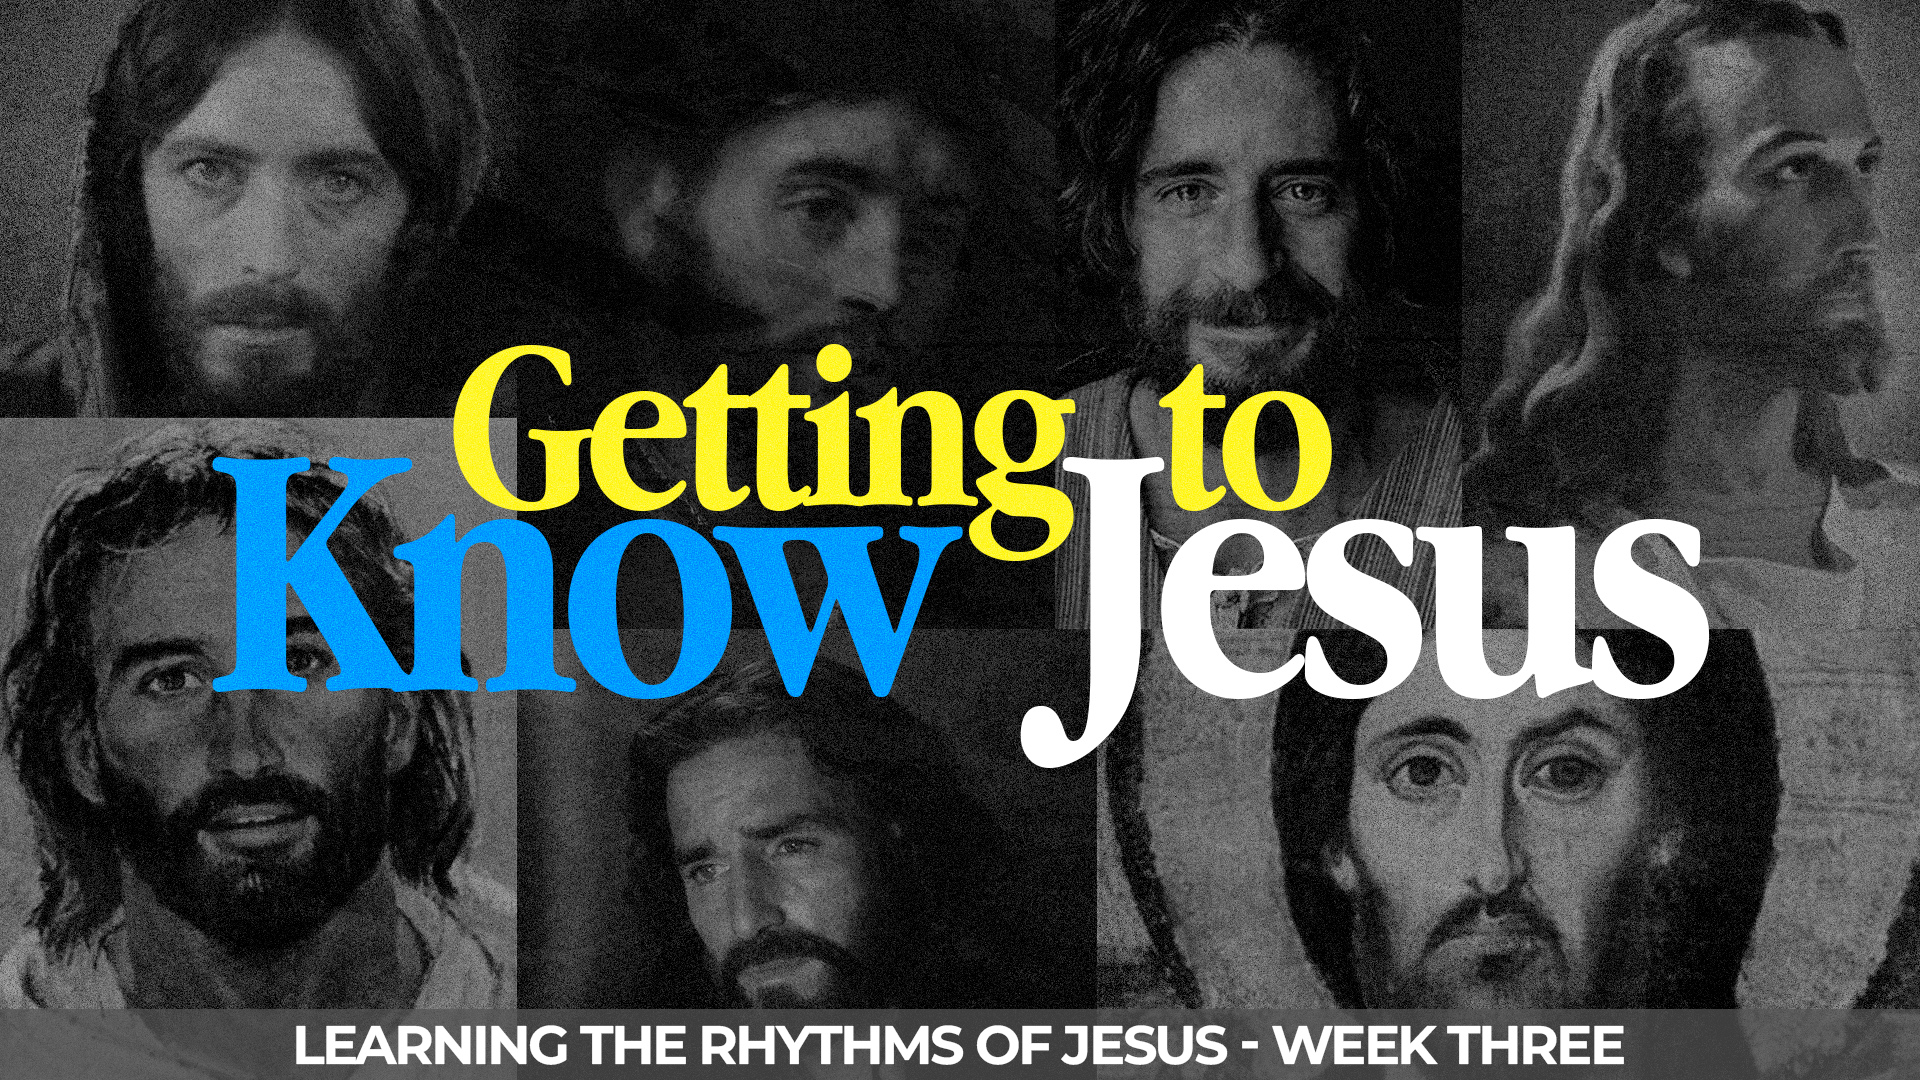 Learning the Rhythms of Jesus - Week Three